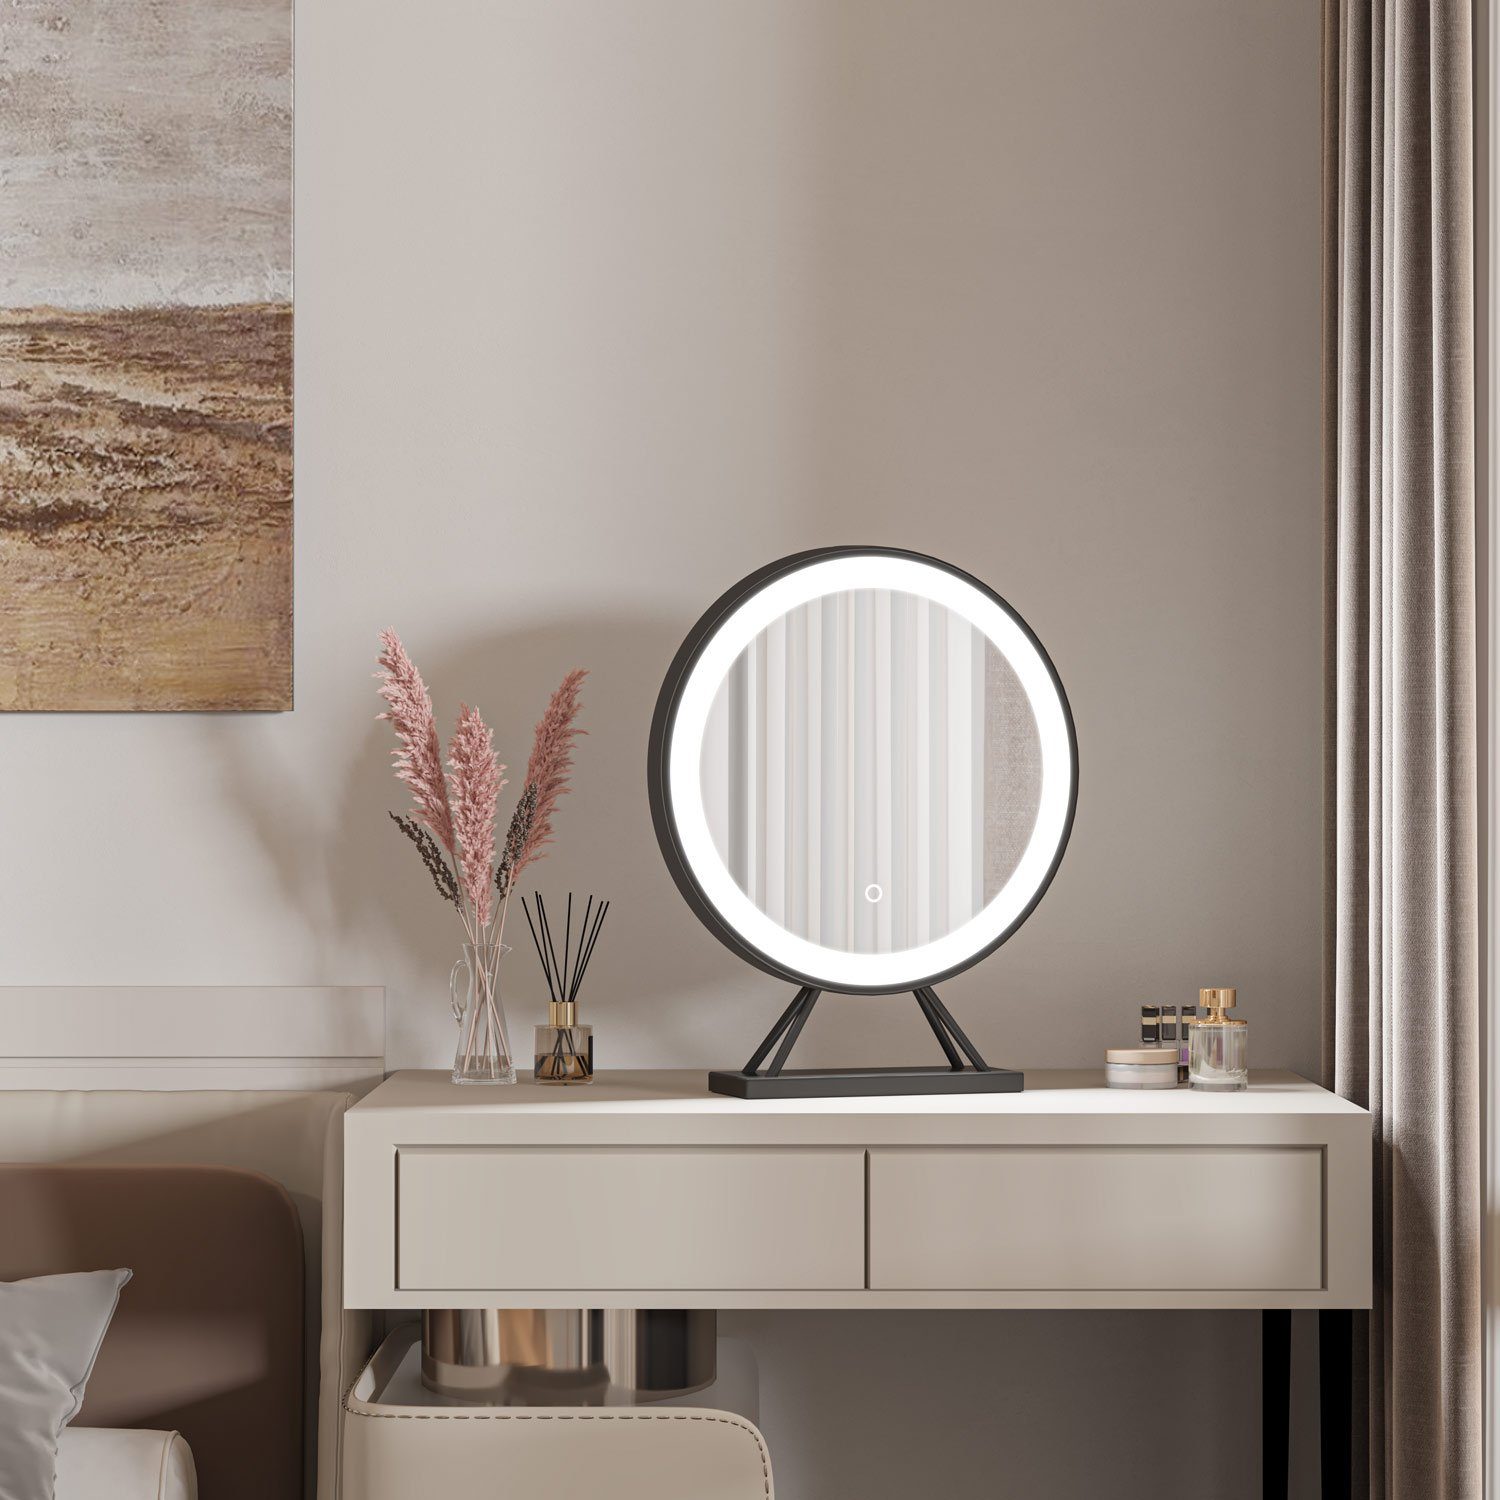 duschspa 3 dimmbar, Lichtfarbe, Schwarz LED Schminkspiegel Tischspiegel, Kosmetikspiegel Helligkeit-Memory